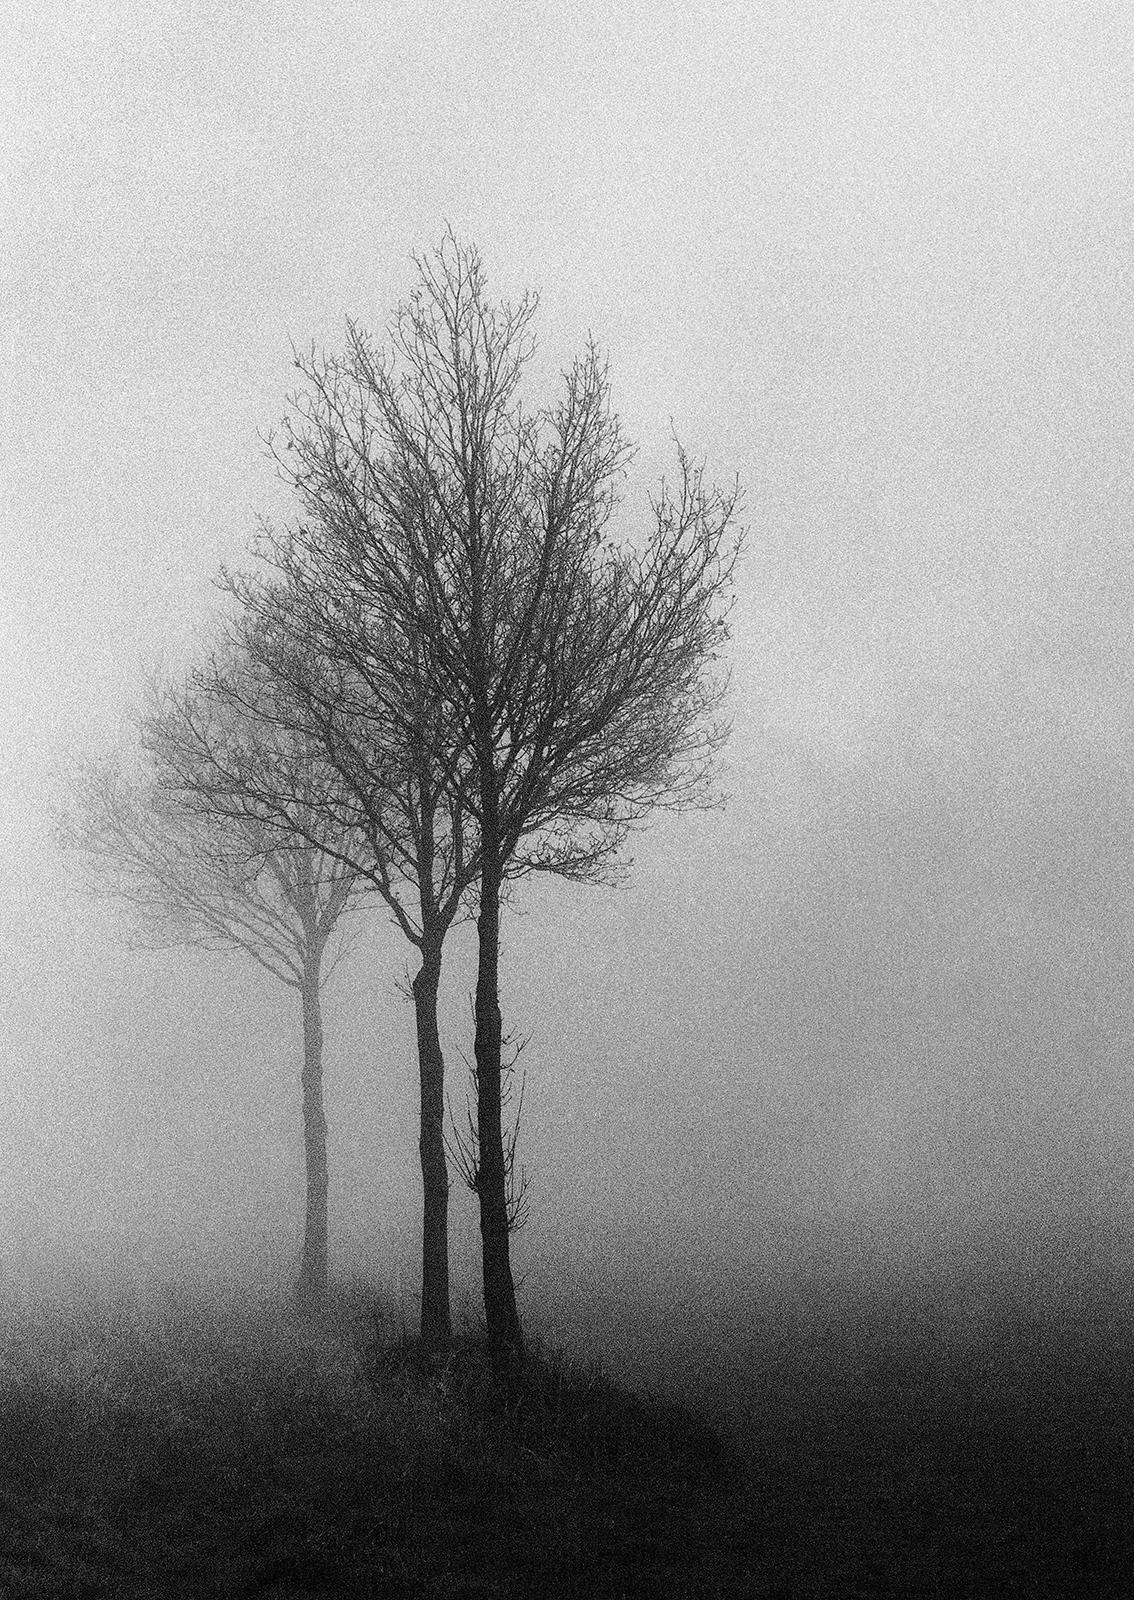 3 Trees - Impression nature en édition limitée signée, photo en blanc et noir, arbre dans la brume  - Gris Landscape Photograph par Ian Sanderson